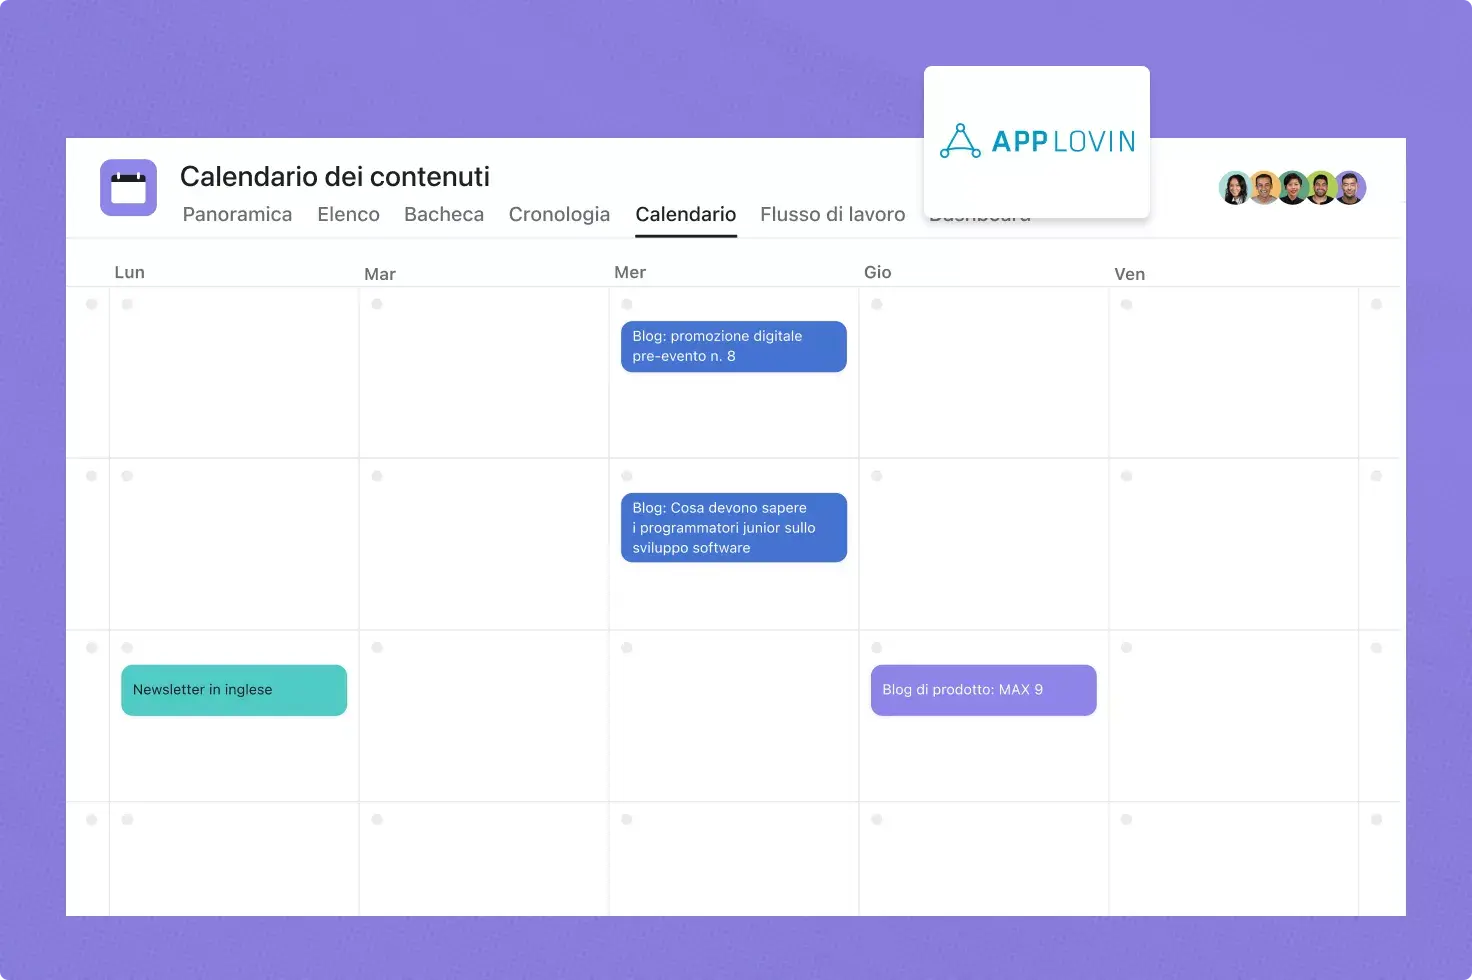 AppLovin usa Asana per il suo flusso di lavoro relativo al calendario dei contenuti